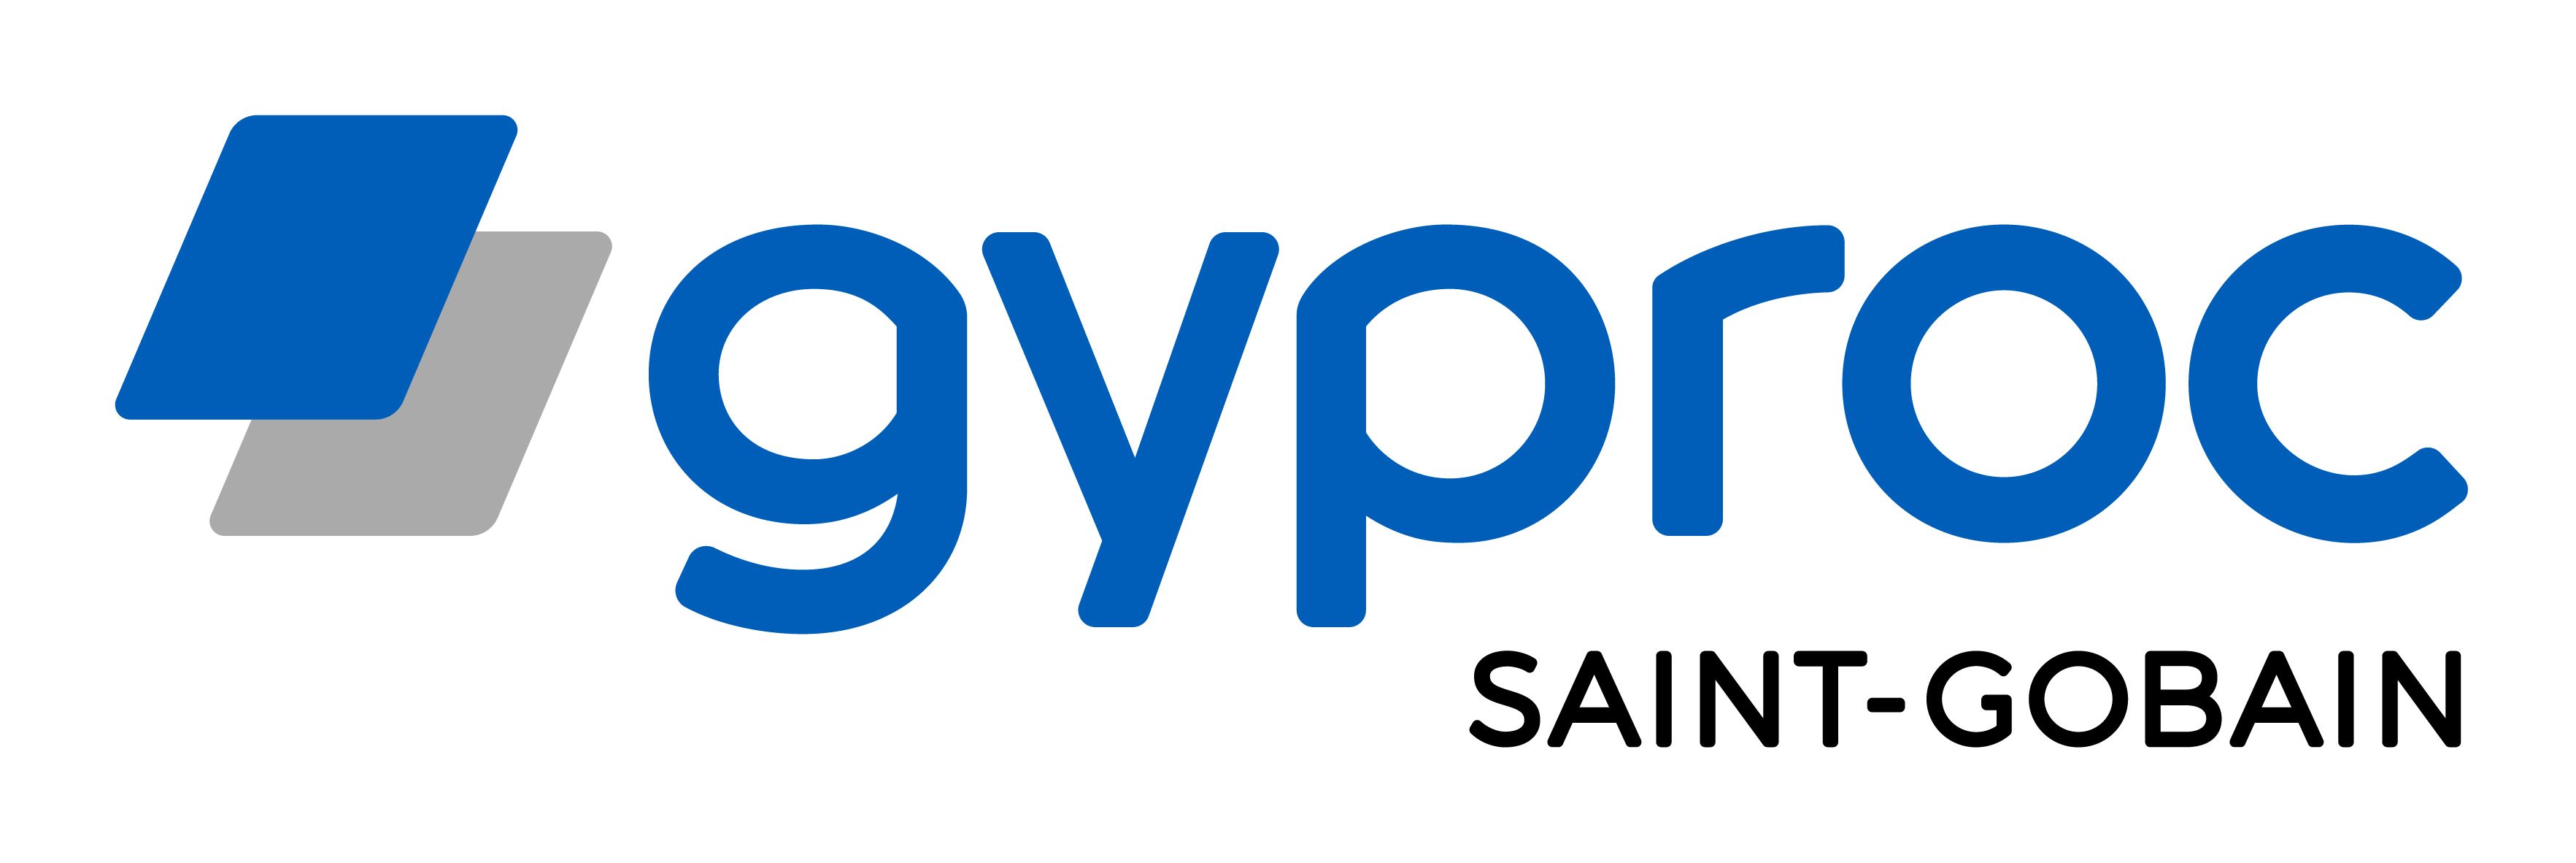 Saint-Gobain Sweden AB, Gyproc